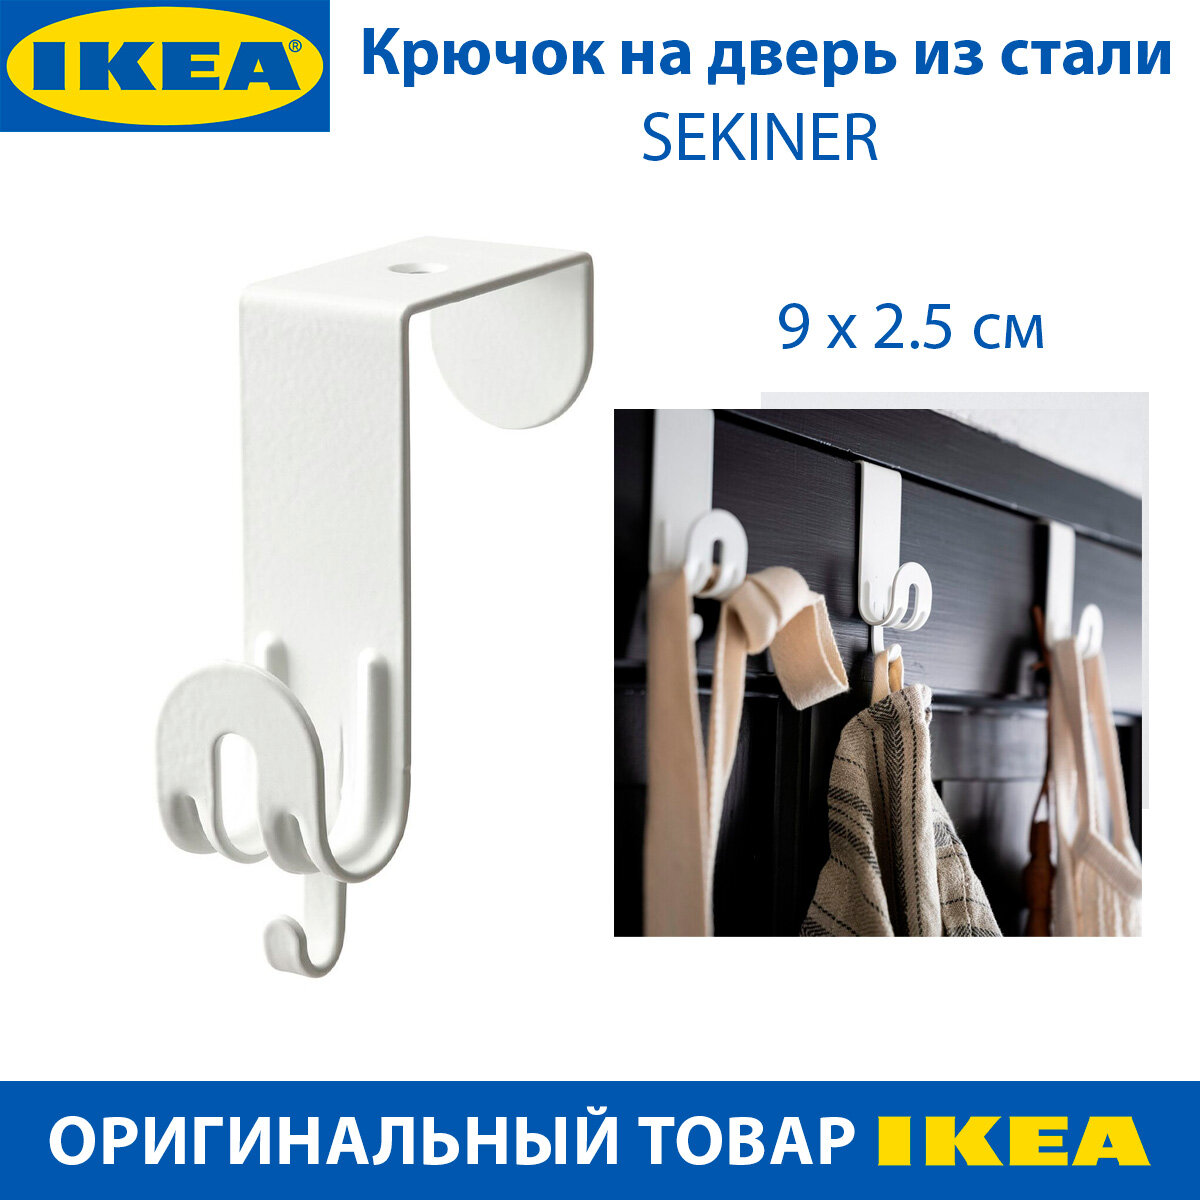 Крючок на дверь IKEA SEKINER (секинер), из стали, белый, 9 х 2.5 см, 1 шт